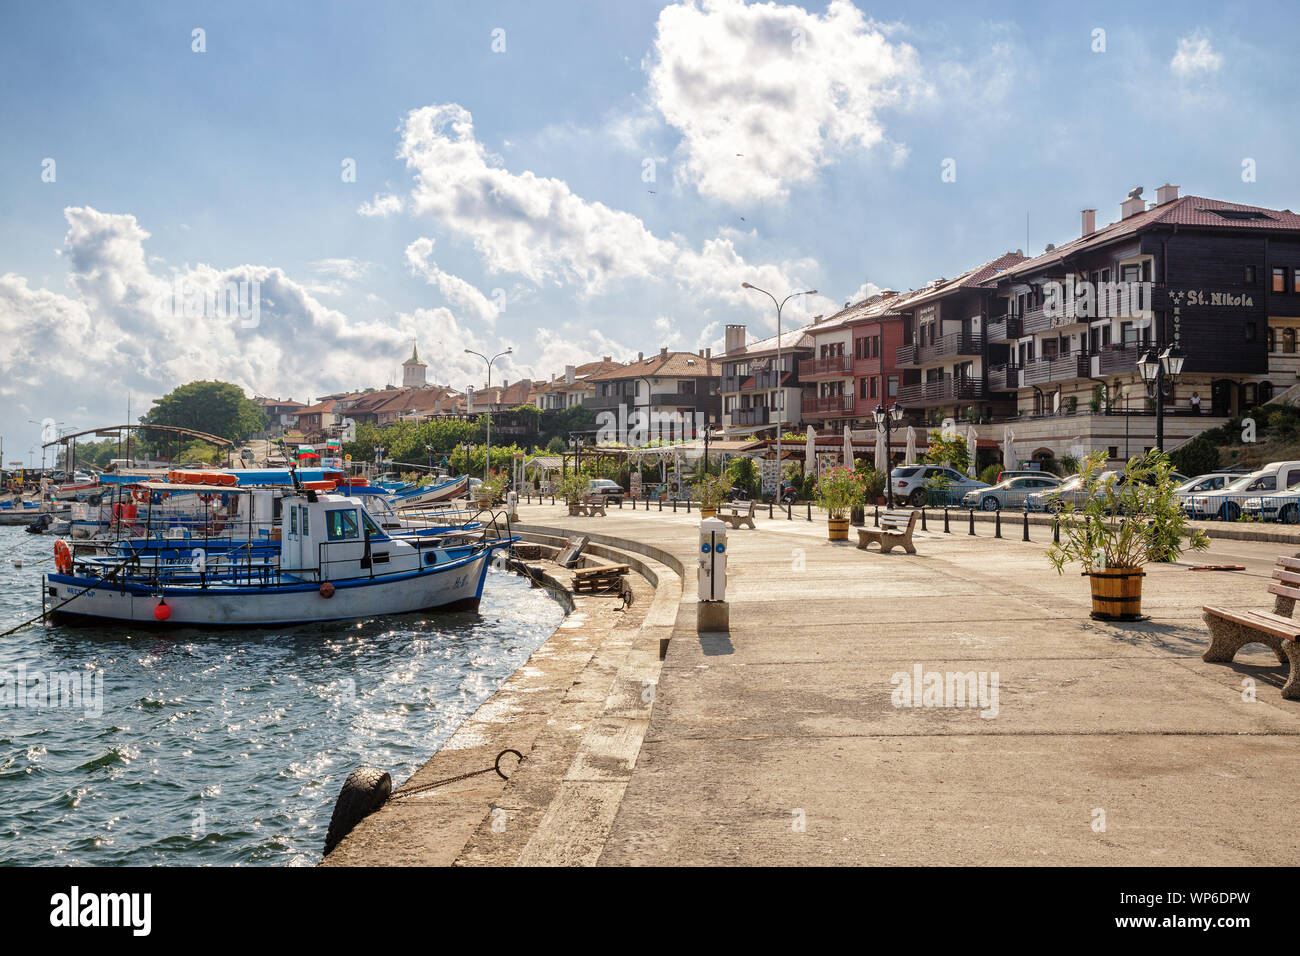 NESSEBAR, Bulgaria - 26 giugno 2019: vista del lungomare con alberghi e barche da pesca del Mar Nero resort di Nessebar Foto Stock